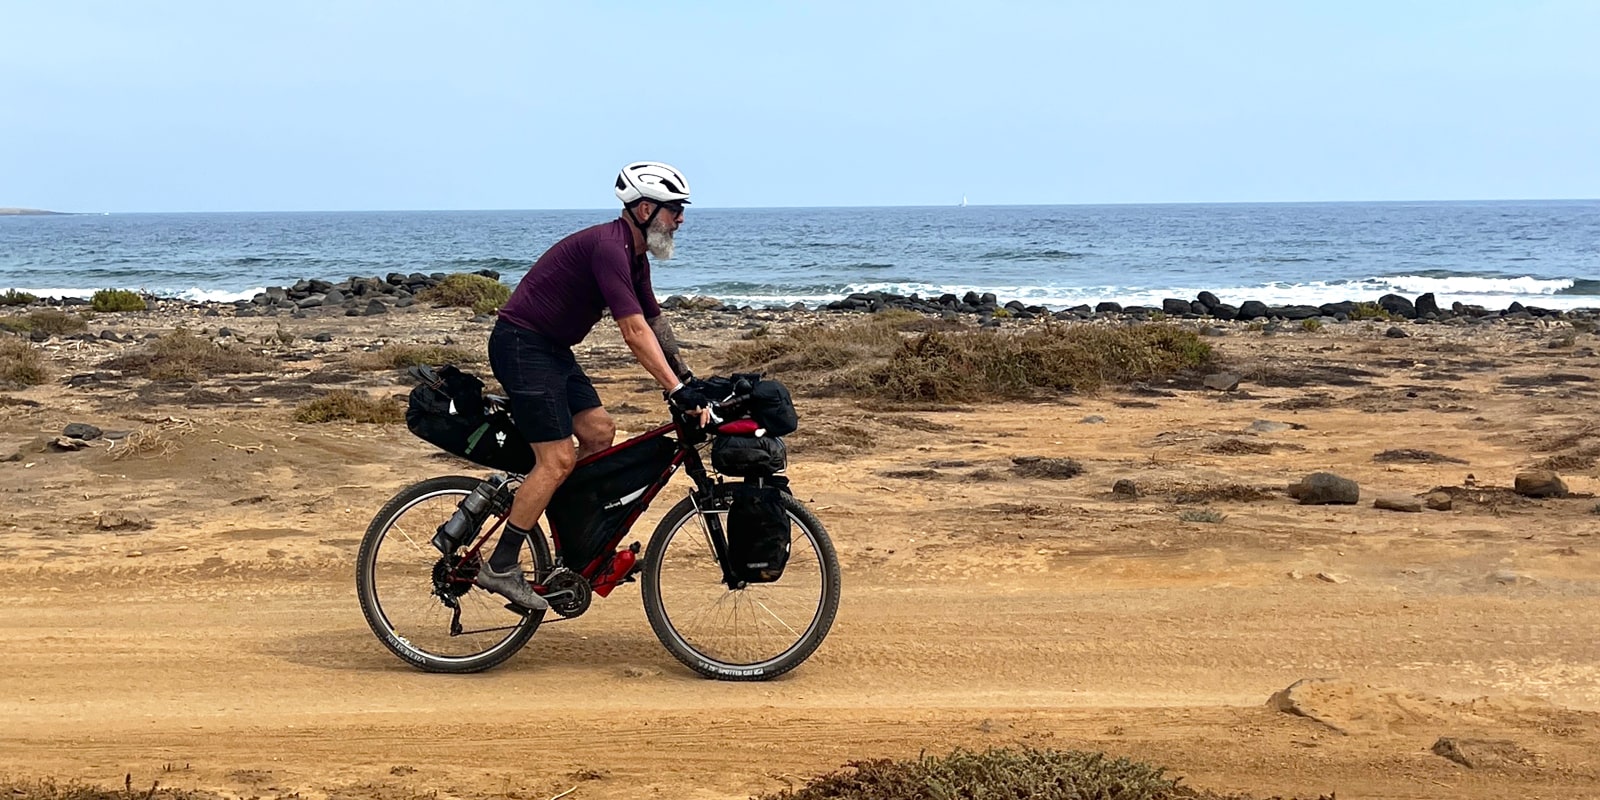 Roberto Adami durante il viaggio in bikepacking alle Canarie.